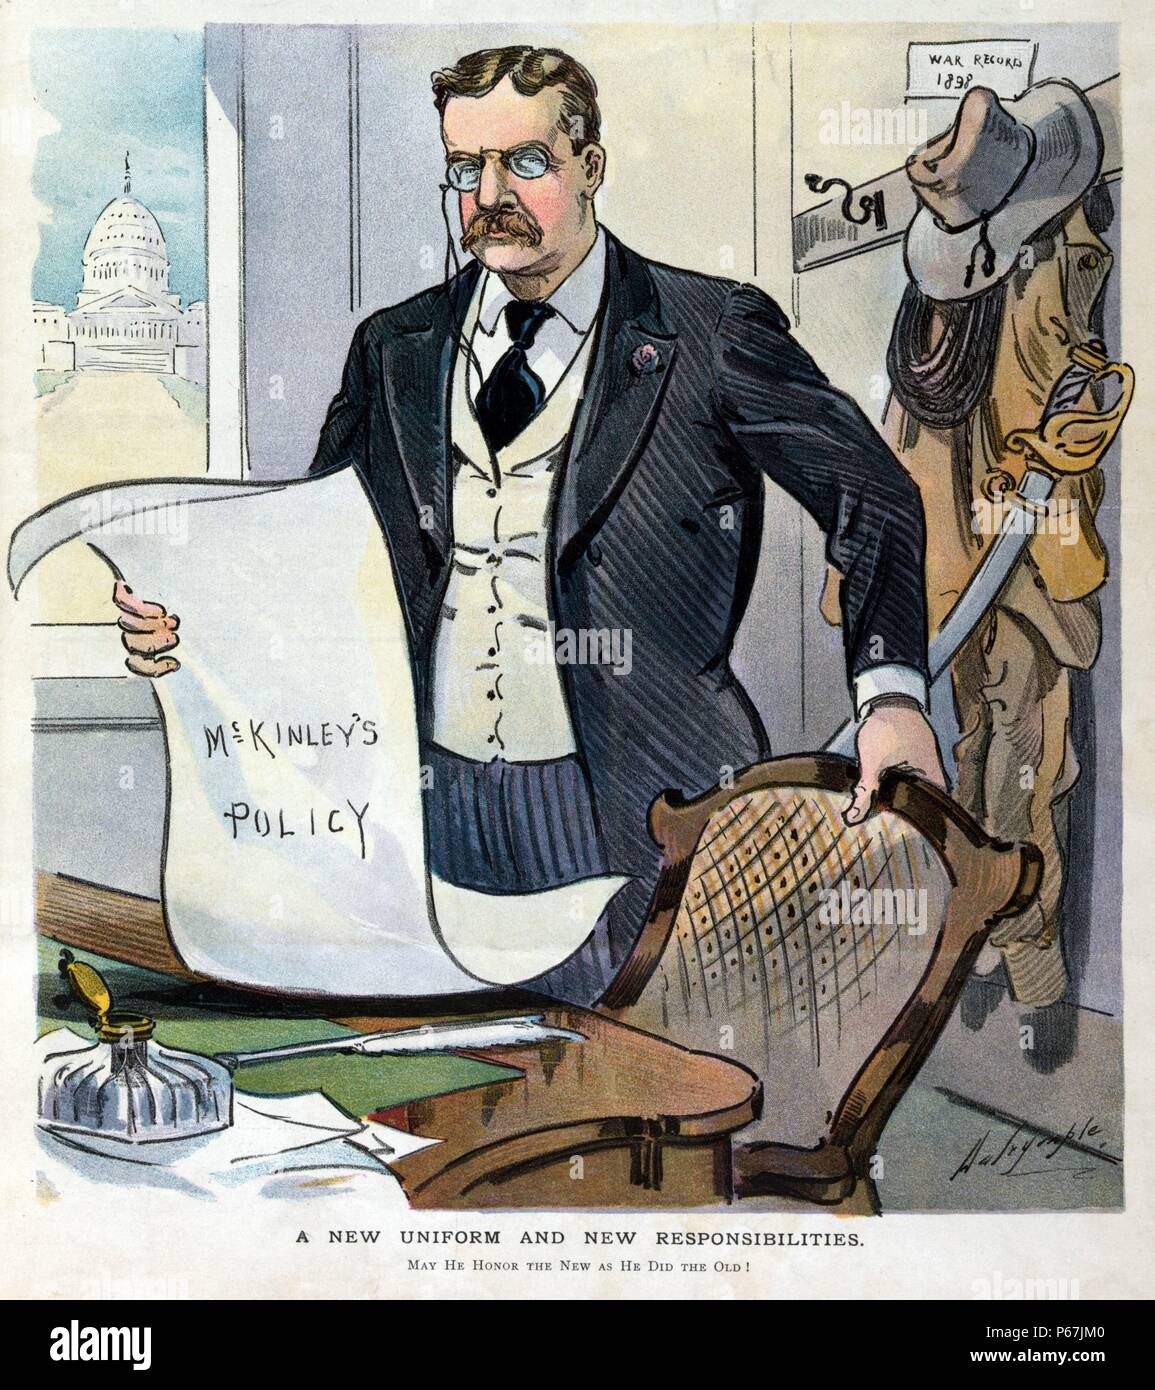 Eine neue Uniform und neue Verantwortung" Theodore Roosevelt die Übernahme der Aufgaben der Präsident nach der Ermordung von Präsident McKinley. Er steht in einem Büro, ein Papier mit der Bezeichnung "cKinley Politik"; seine Rough Rider einheitliche hängt an der Wand hinter ihm. Stockfoto